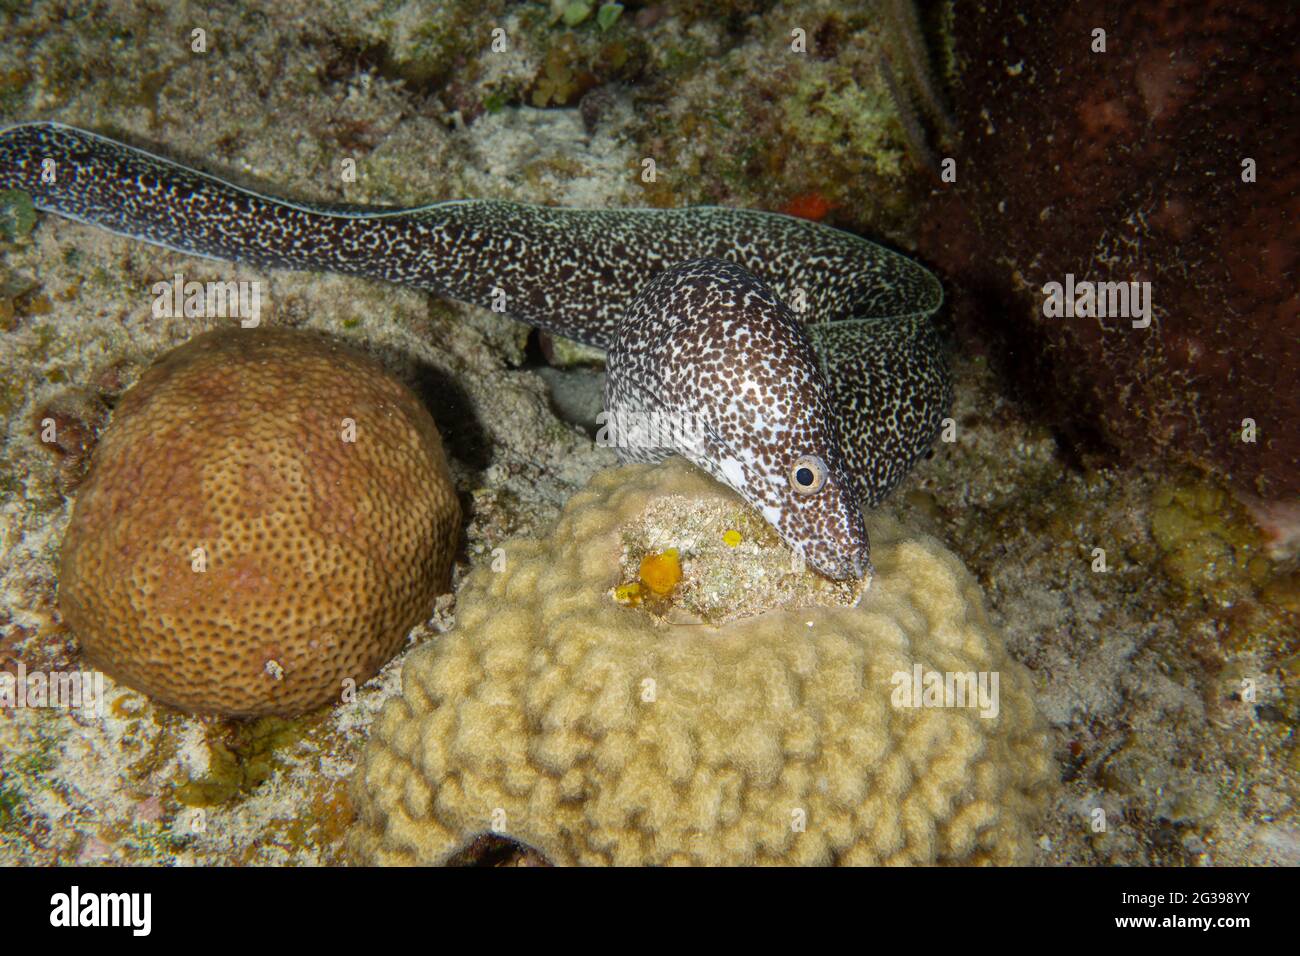 Anguille de Moray sous l'eau. Plongée sous-marine à Cozumel, Mexique. Banque D'Images